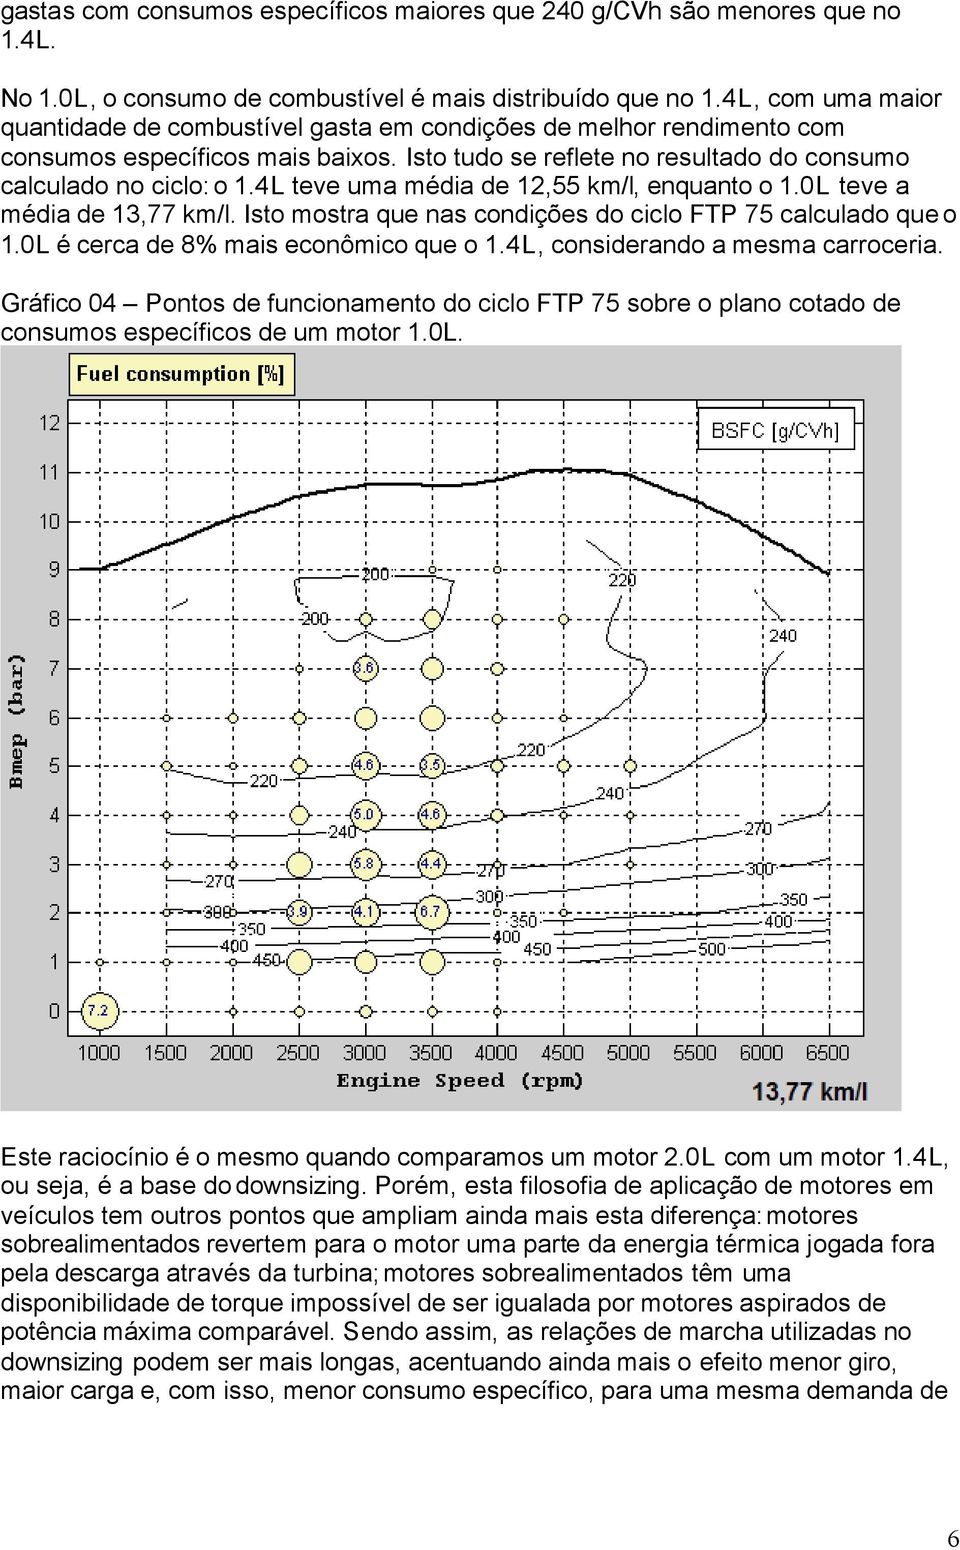 4L teve uma média de 12,55 km/l, enquanto o 1.0L teve a média de 13,77 km/l. Isto mostra que nas condições do ciclo FTP 75 calculado que o 1.0L é cerca de 8% mais econômico que o 1.